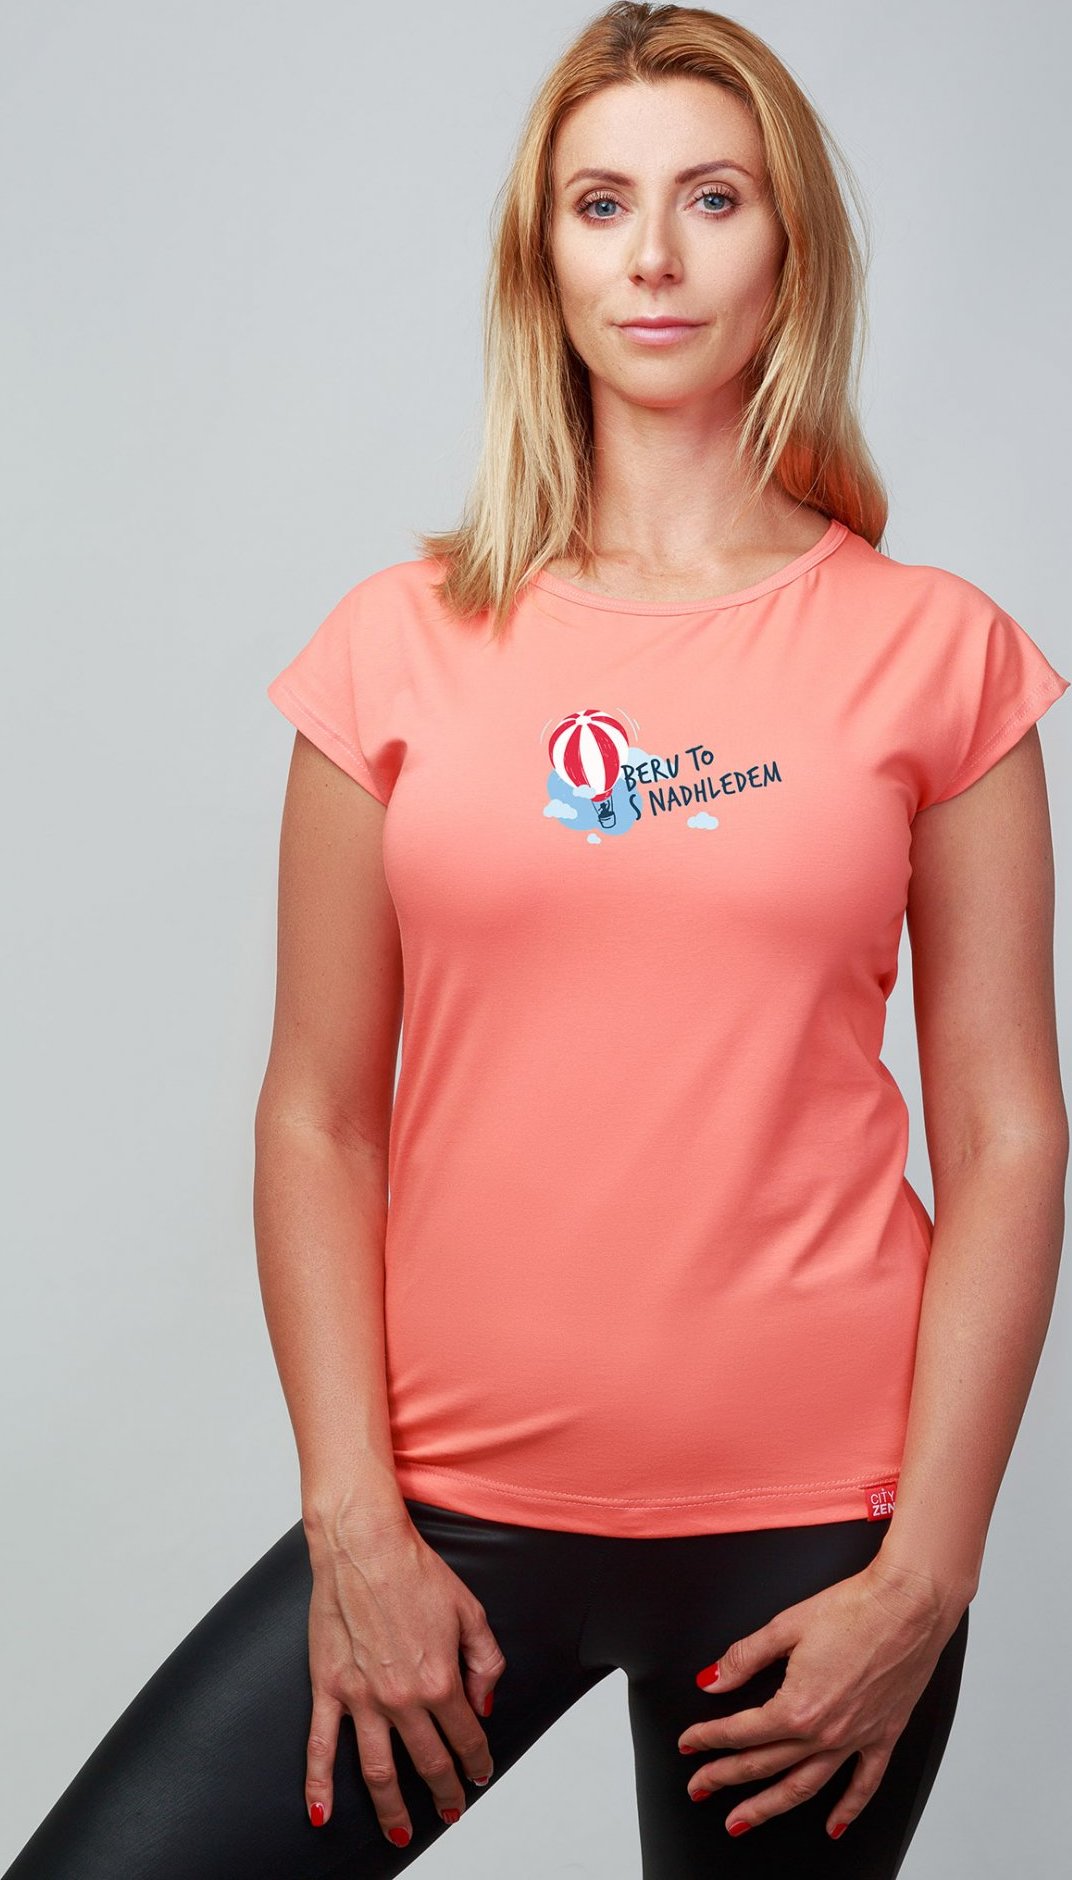 Dámské bavlněné triko CITYZEN růžové Beru to s nadhledem Velikost: XL/44